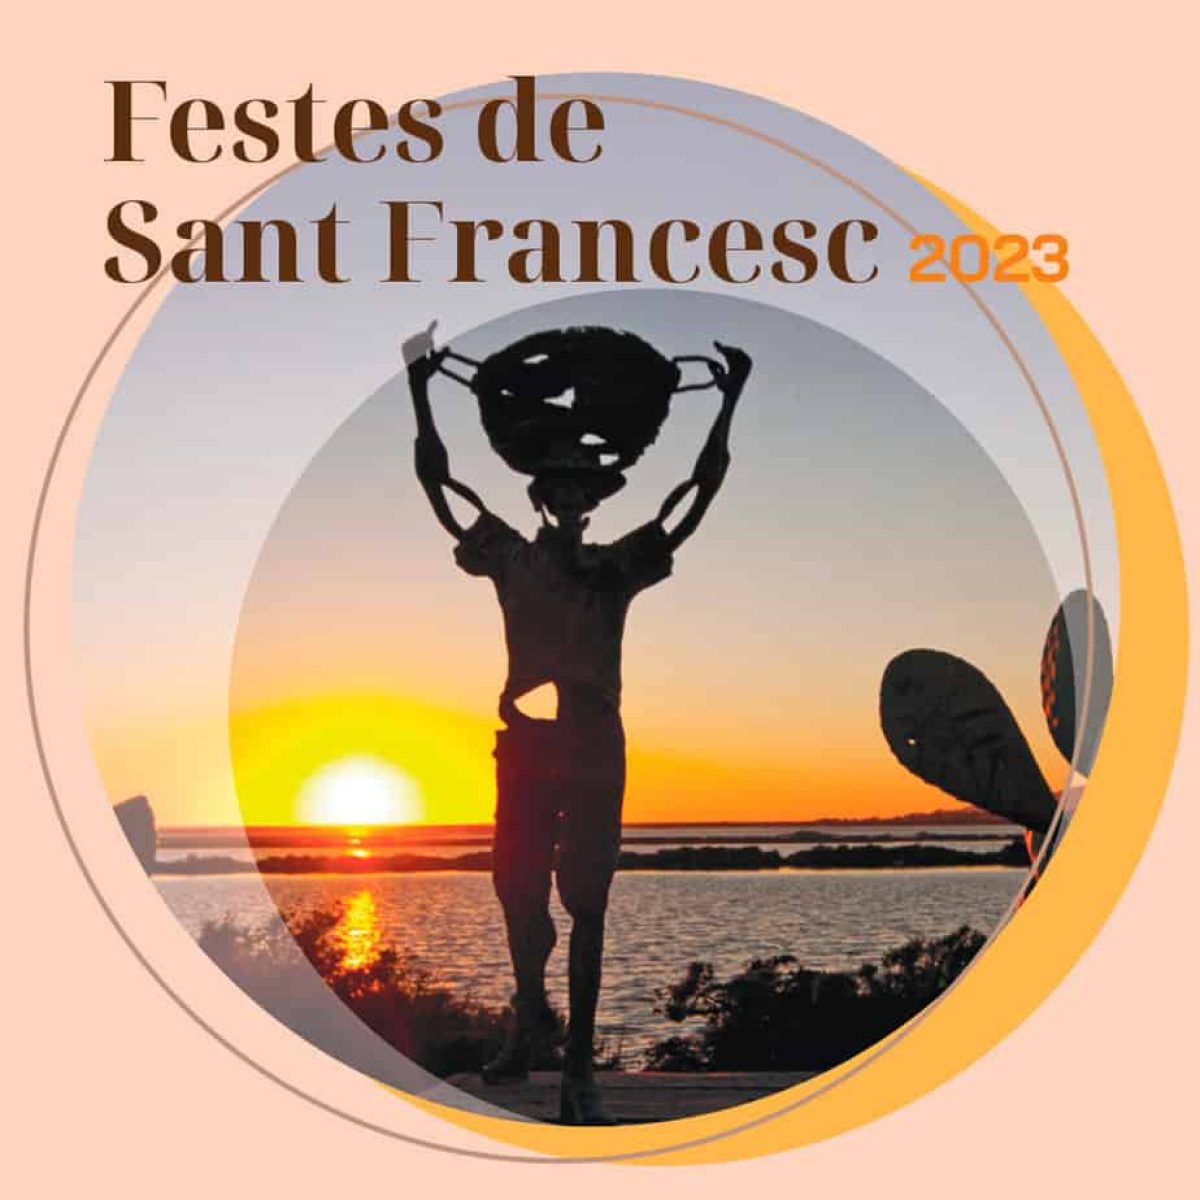 festiviteiten-van-sant-francesc-ibiza-2023-welcometoibiza